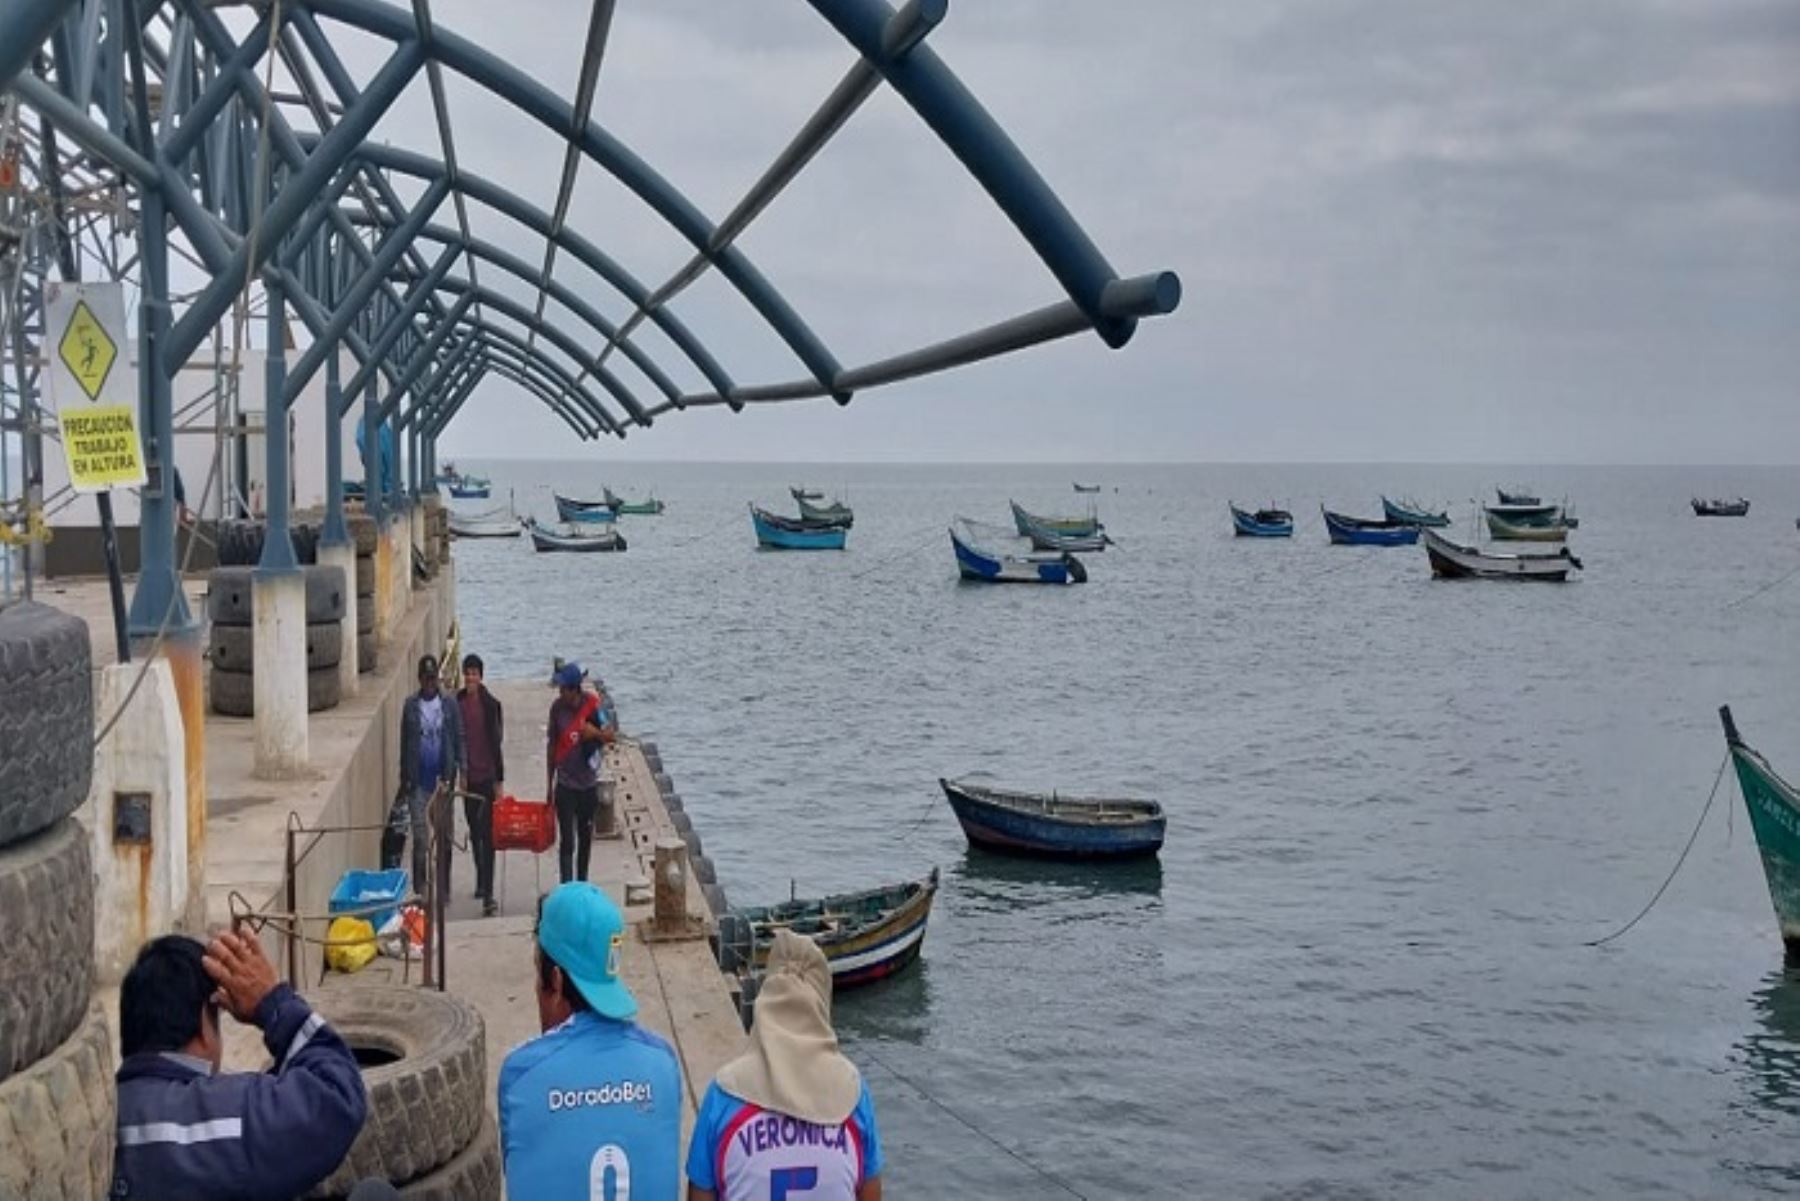 Se inspeccionó el balneario de Puerto Morín y se constató el estado de las instalaciones,así como las acciones que se vienen ejecutando con los pescadores para evitar contingencias con sus actividades.